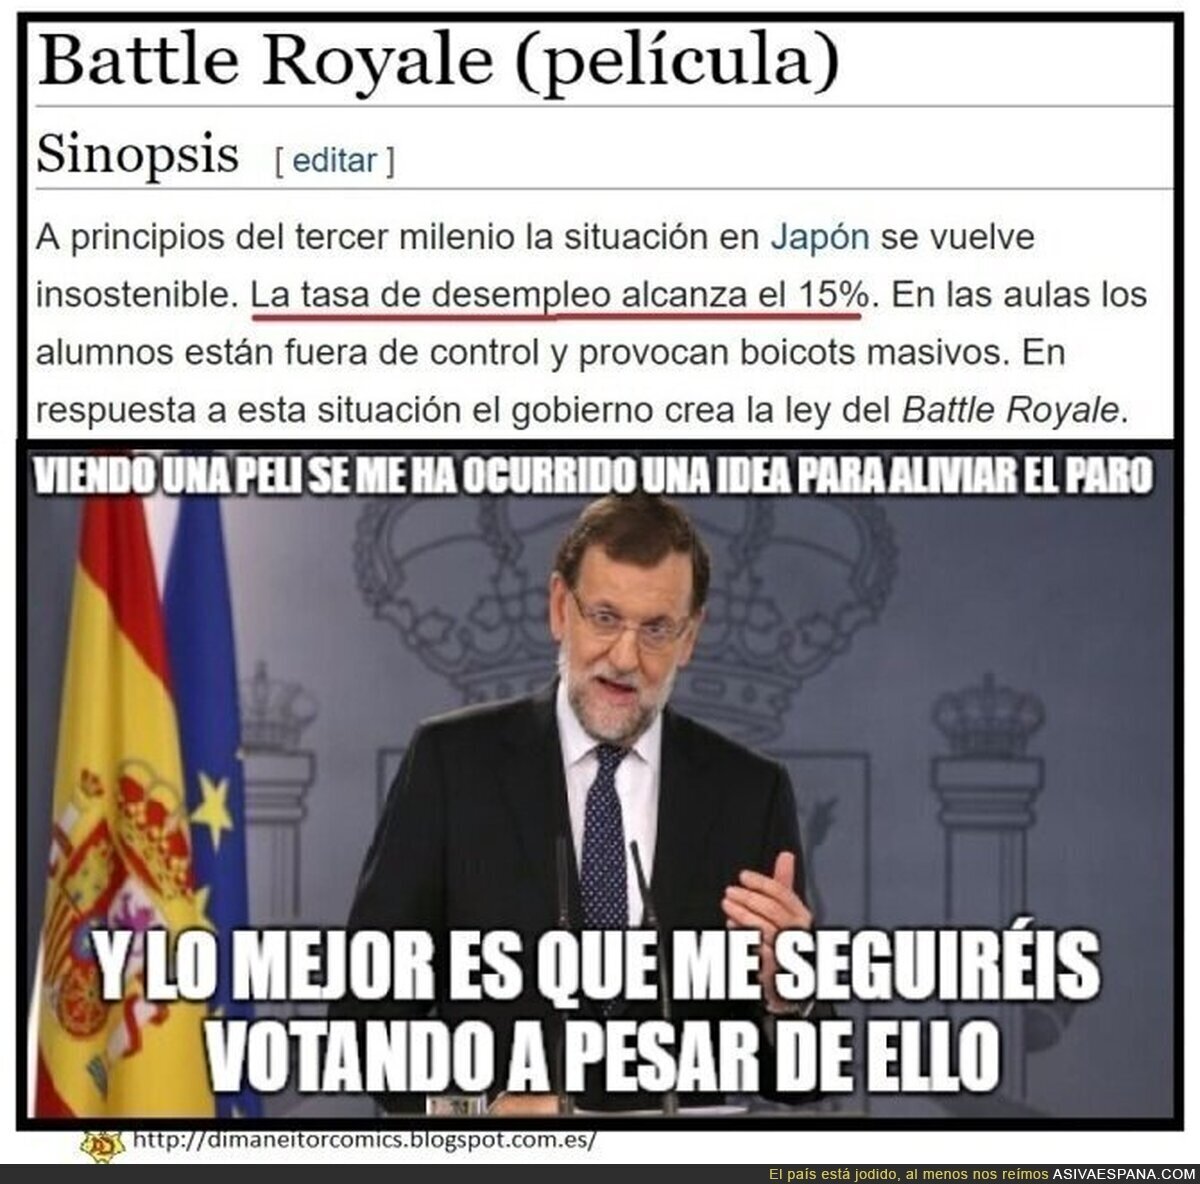 Battle Royale en España